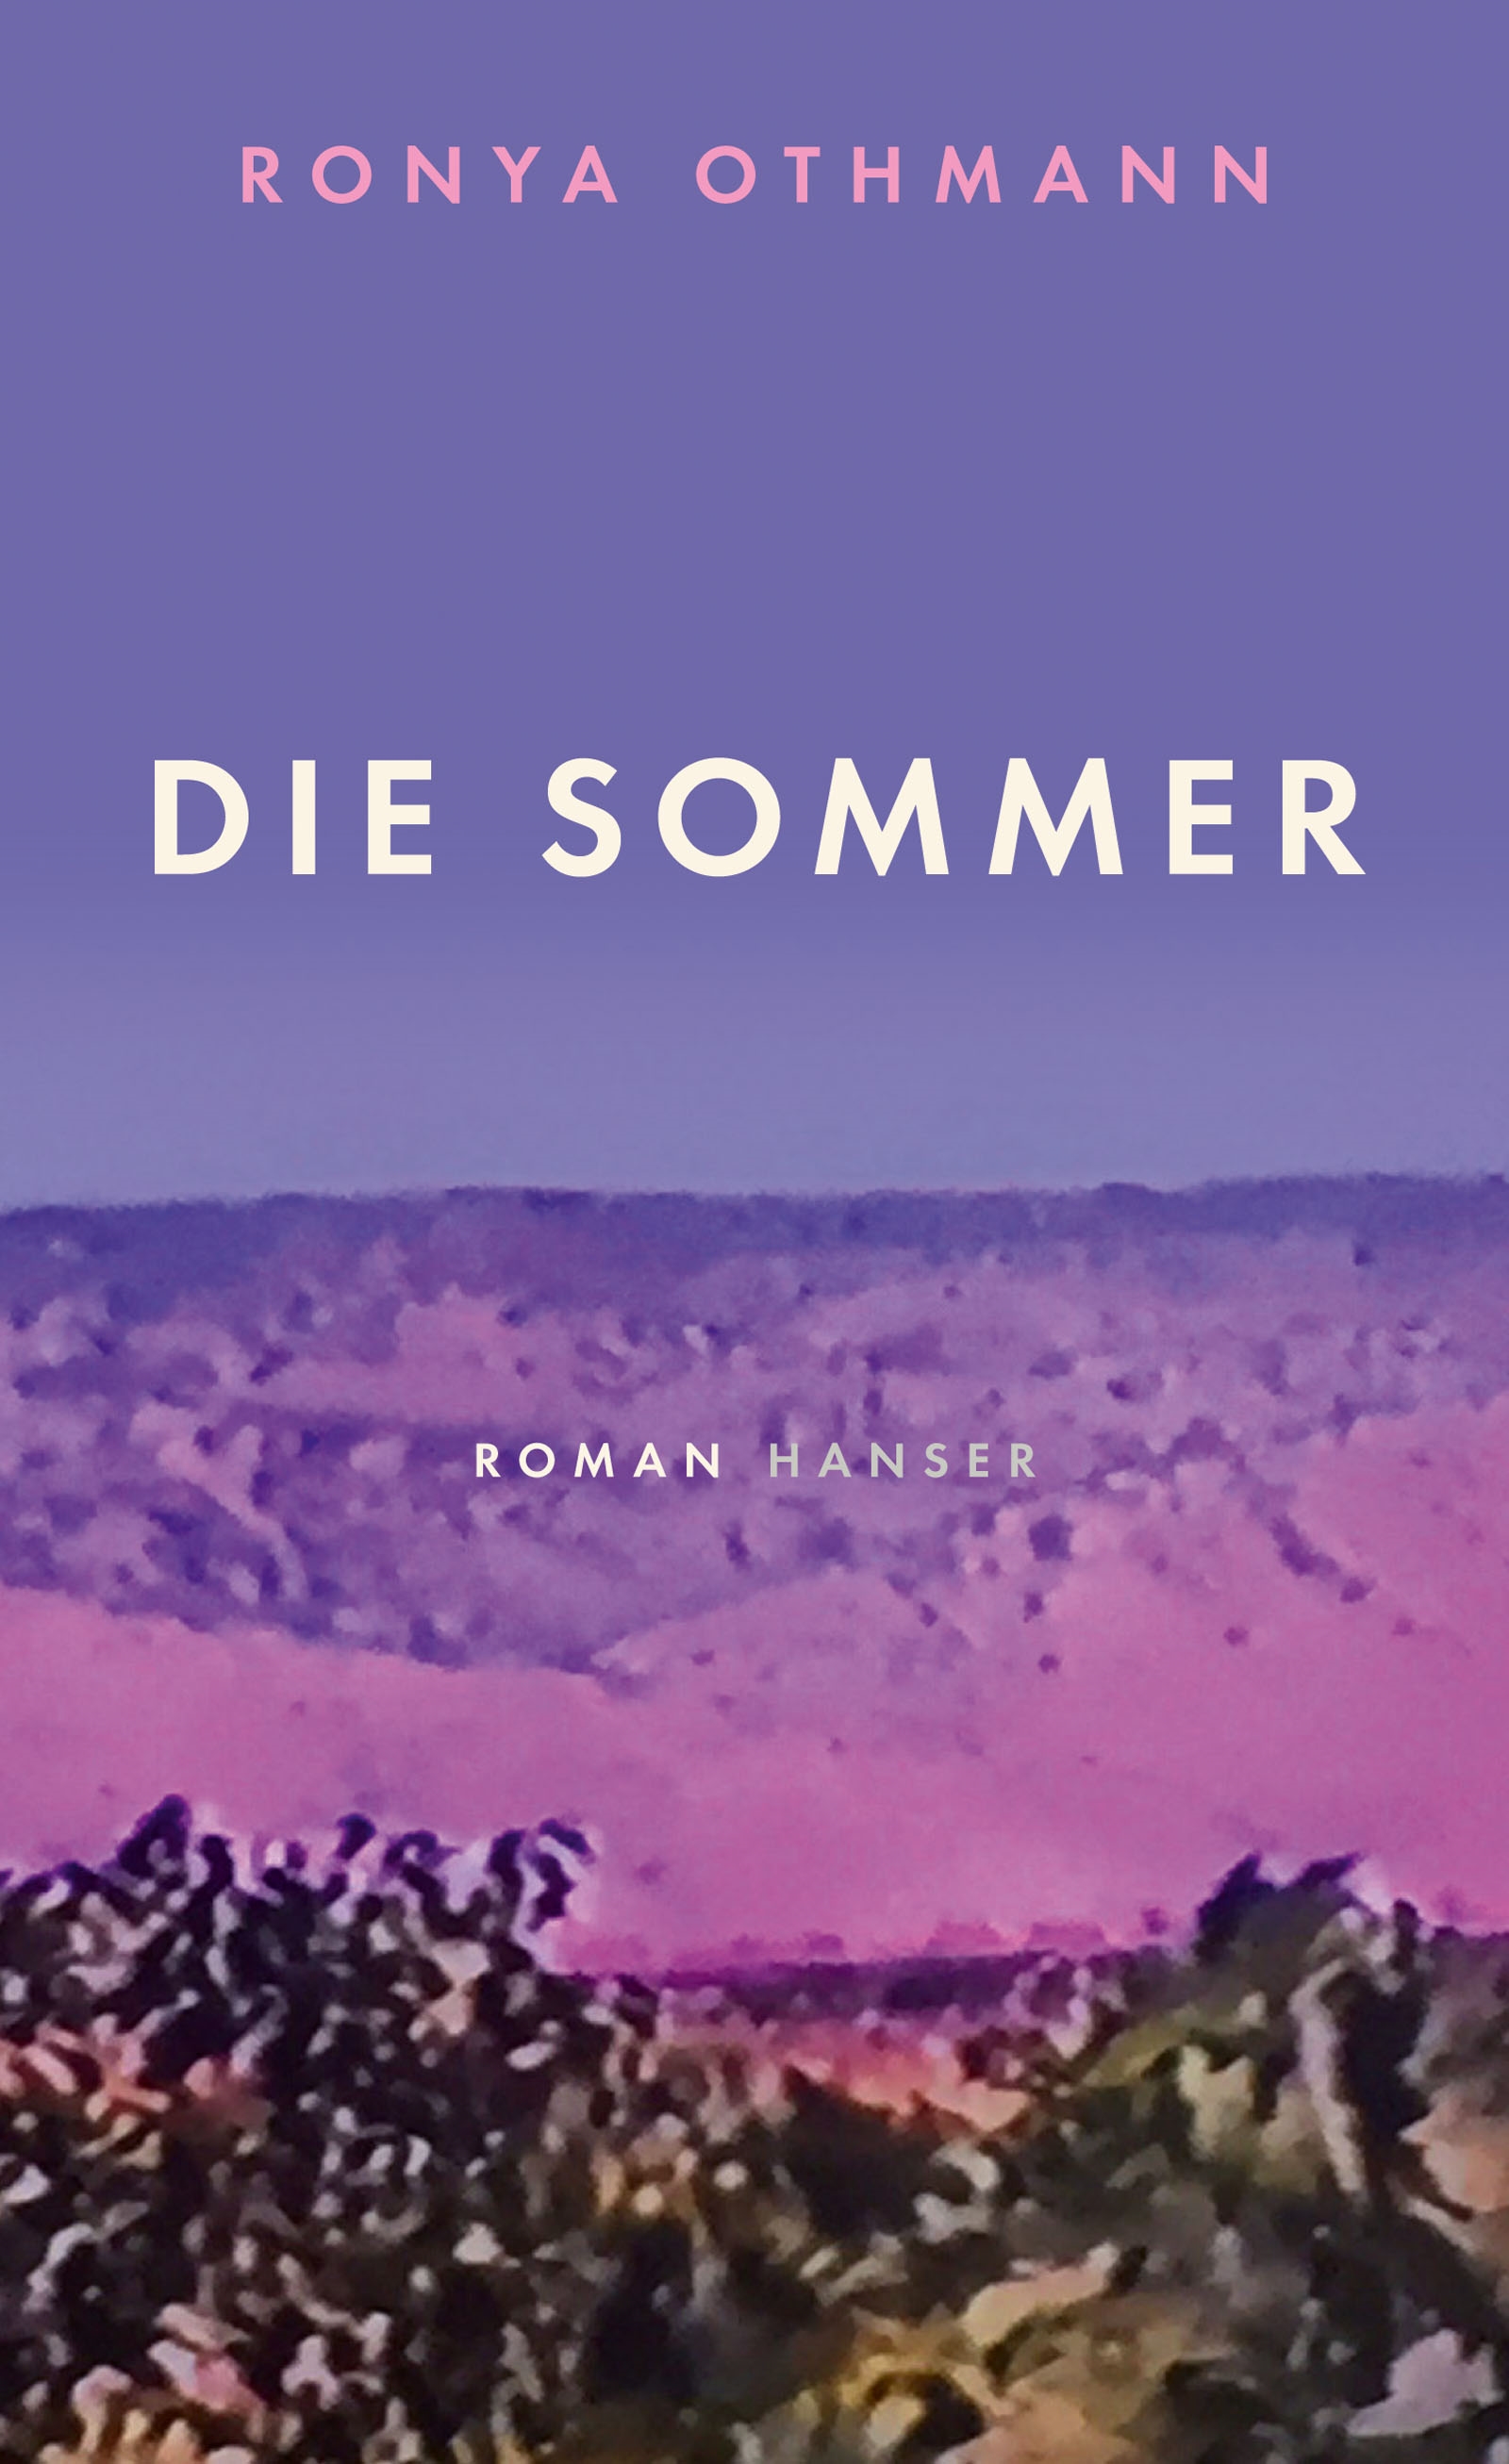 الغلاف الألماني لرواية الكاتبة الألمانية الكردية رونيا عثمان "فصول الصيف". “Die Sommer” im Hanser Verlag